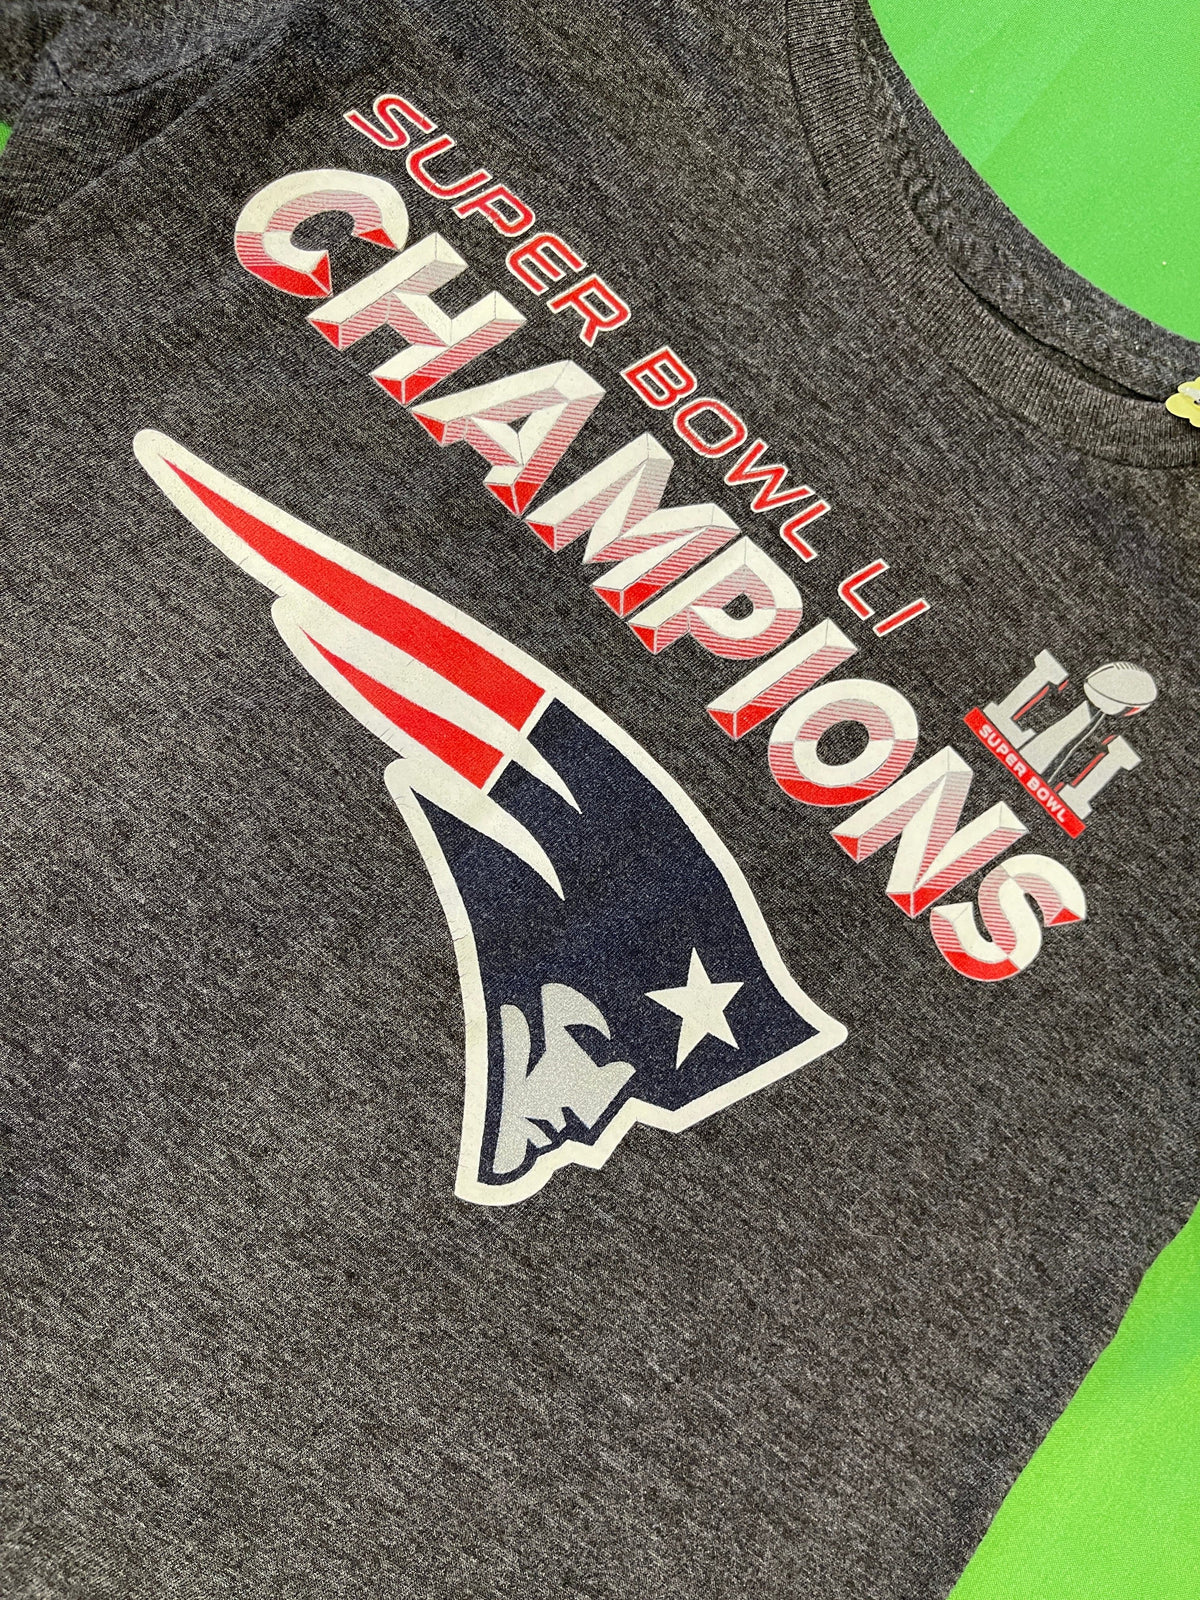 NFL New England Patriots Super Bowl LI Champions T-Shirt Youth X-Small 4T